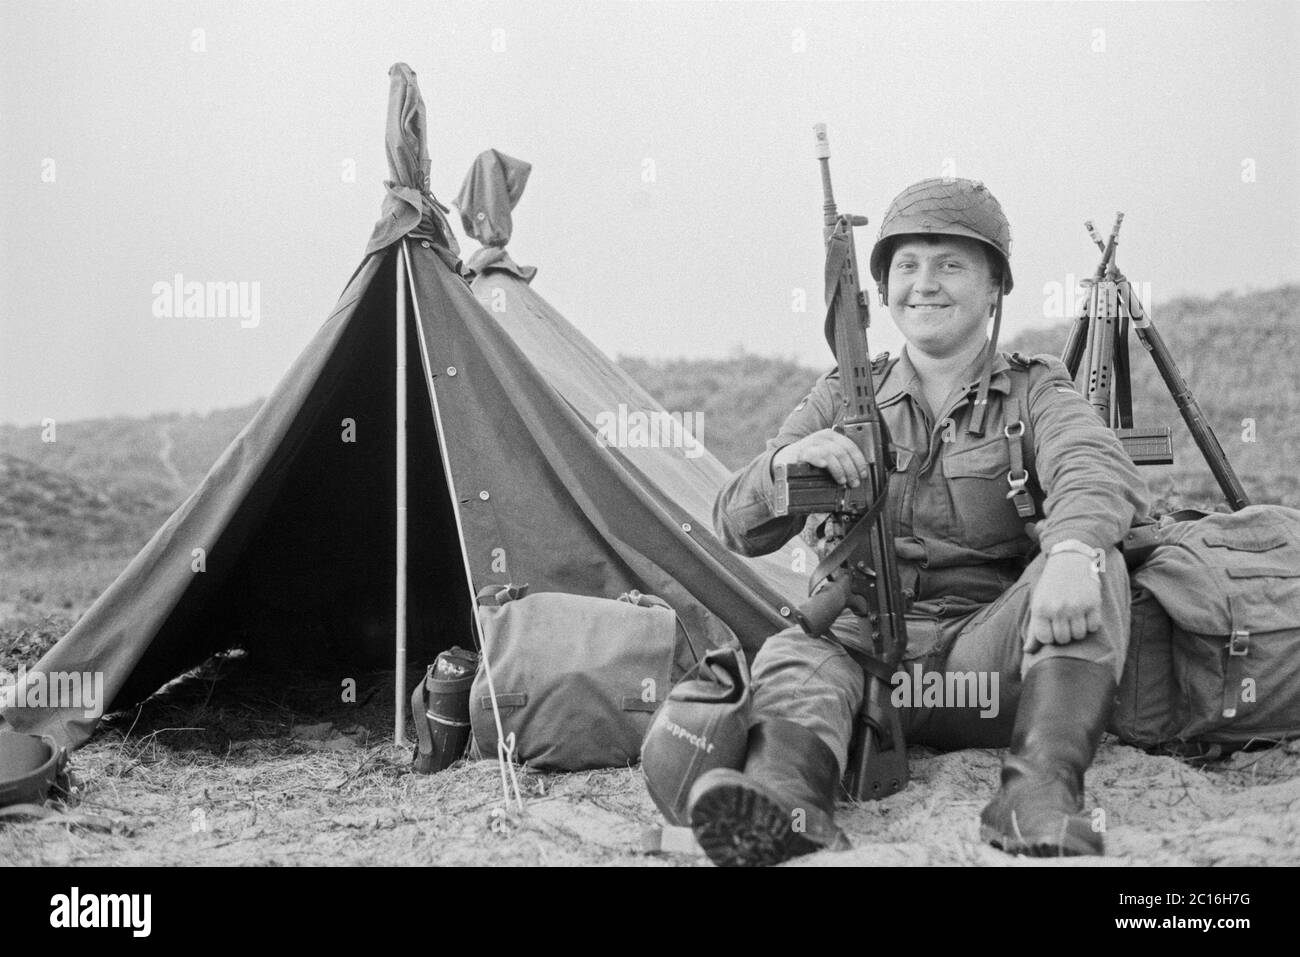 Soldat posiert für Foto, Marinemanöver, Grundausbildung, September 1981, Borkum-Insel, Niedersachsen, Deutschland Stockfoto